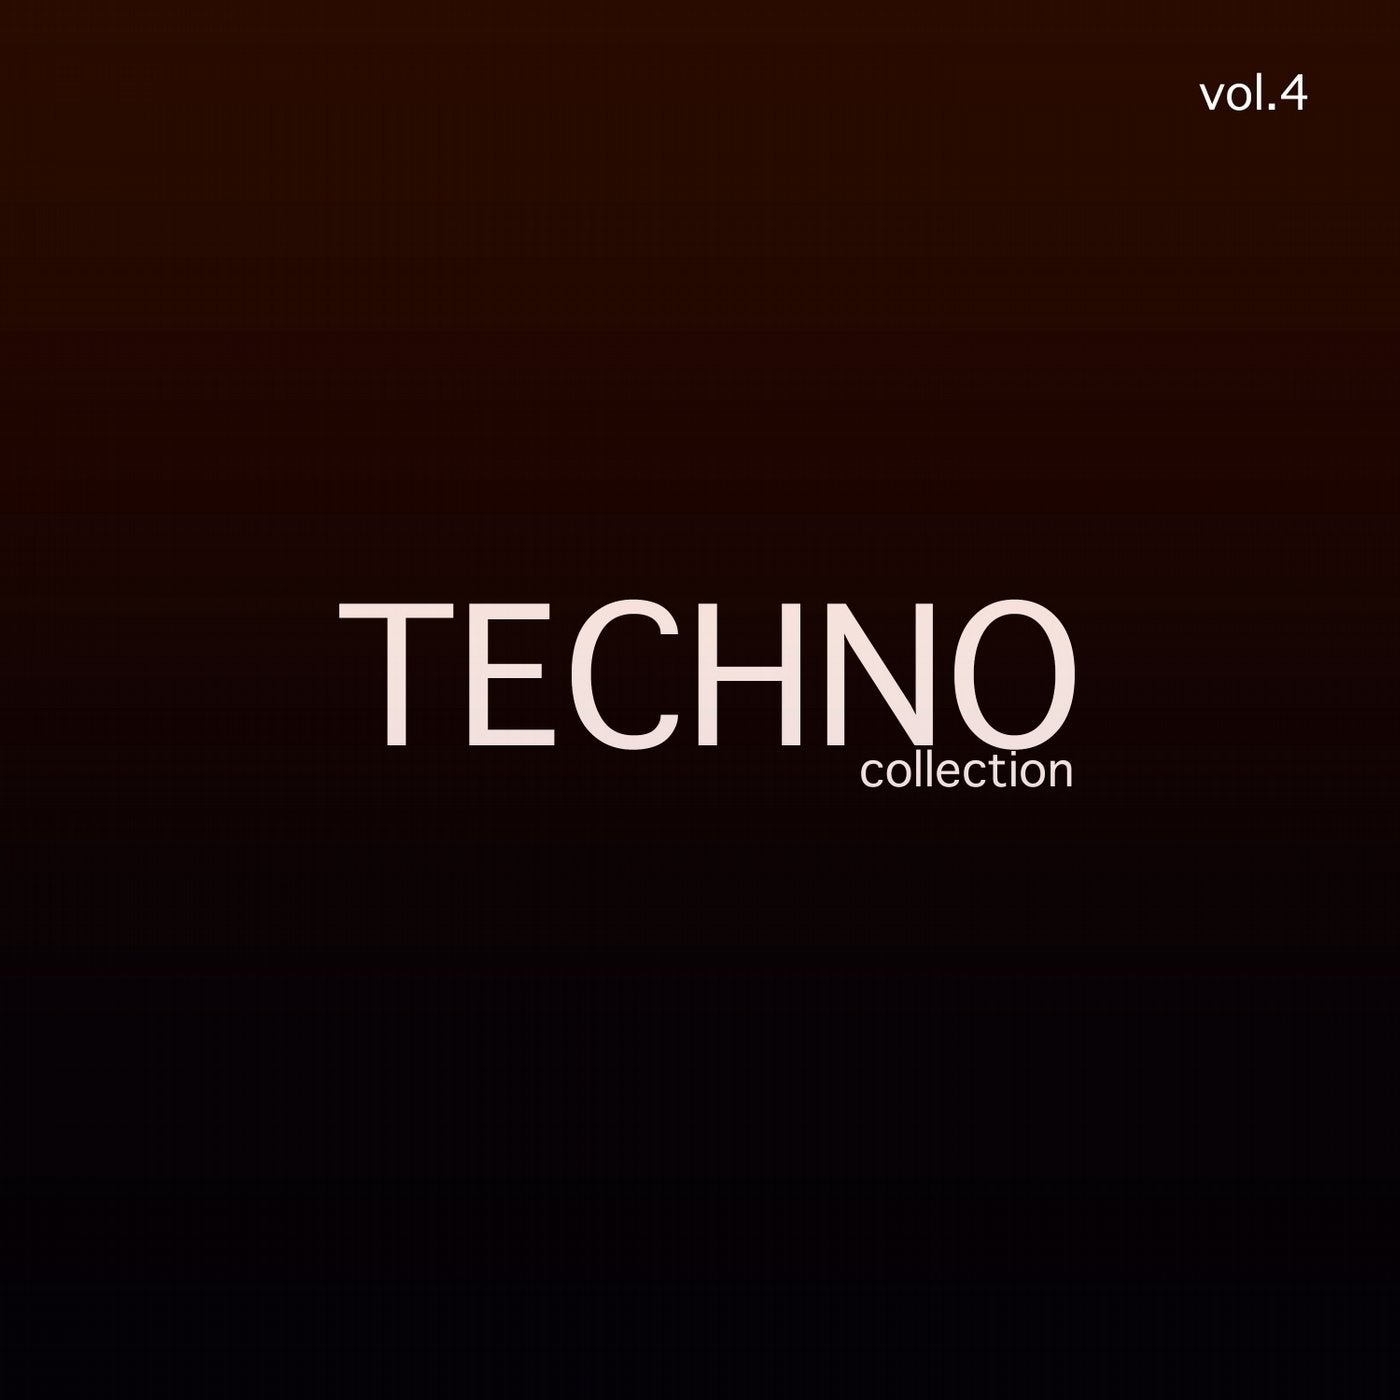 Techno Collection, Vol. 4